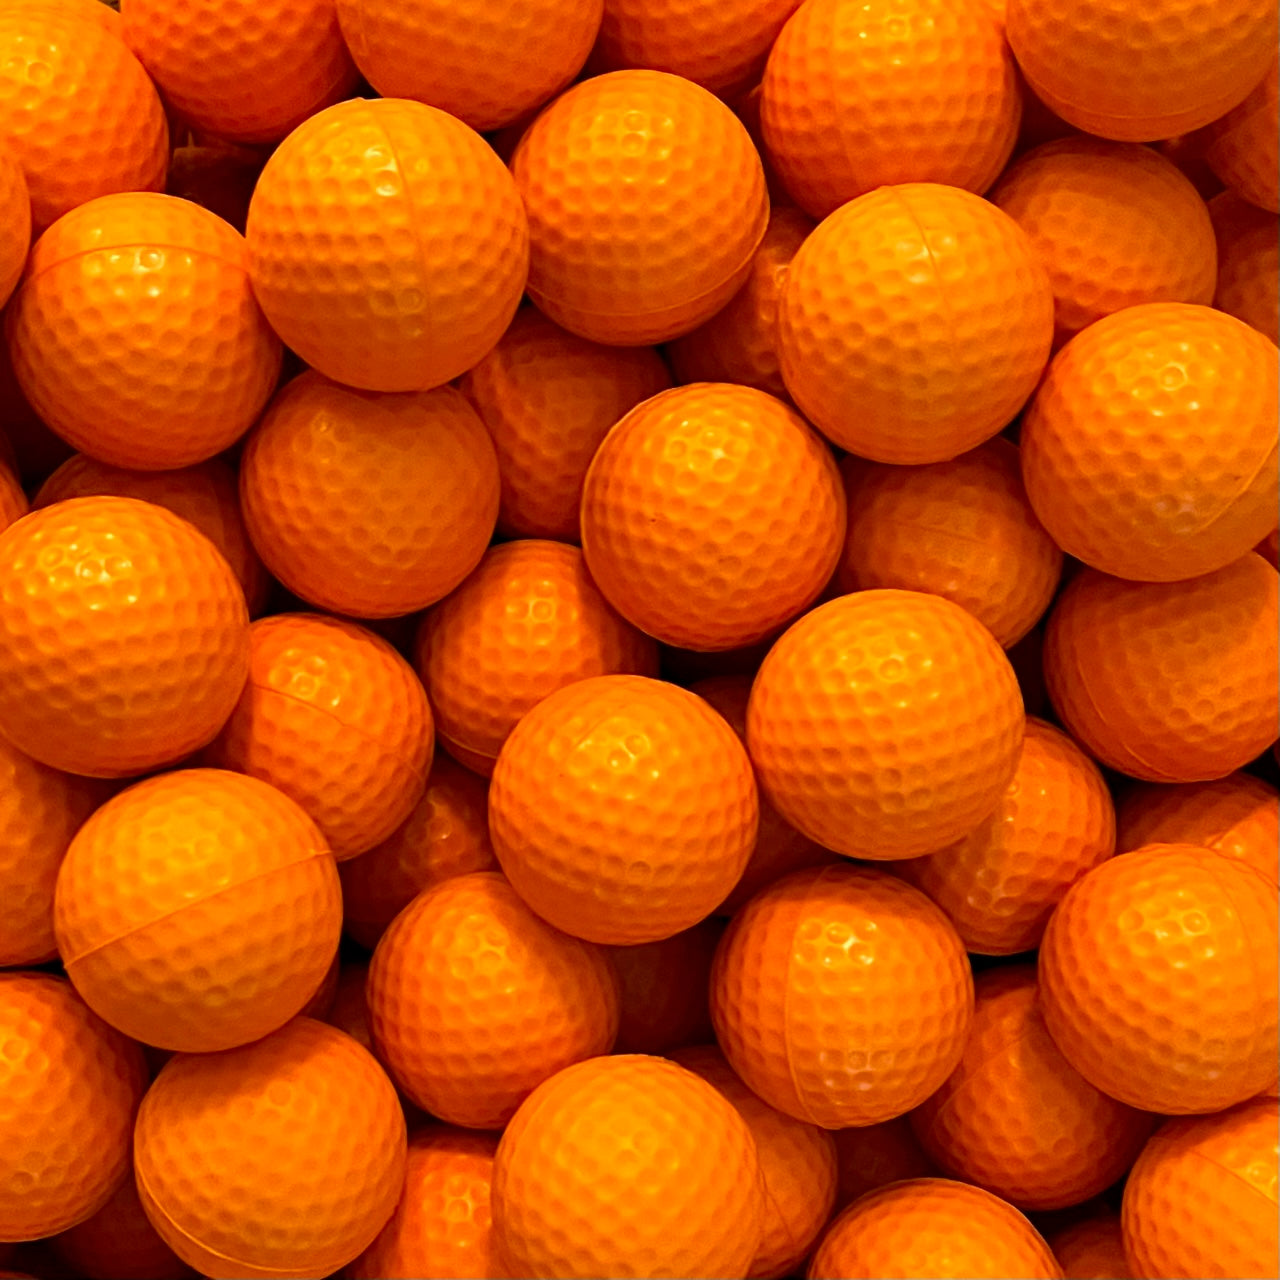 Balles de golf en mousse souple de qualité supérieure pour entraînement de swing intérieur/extérieur – Choisissez la couleur